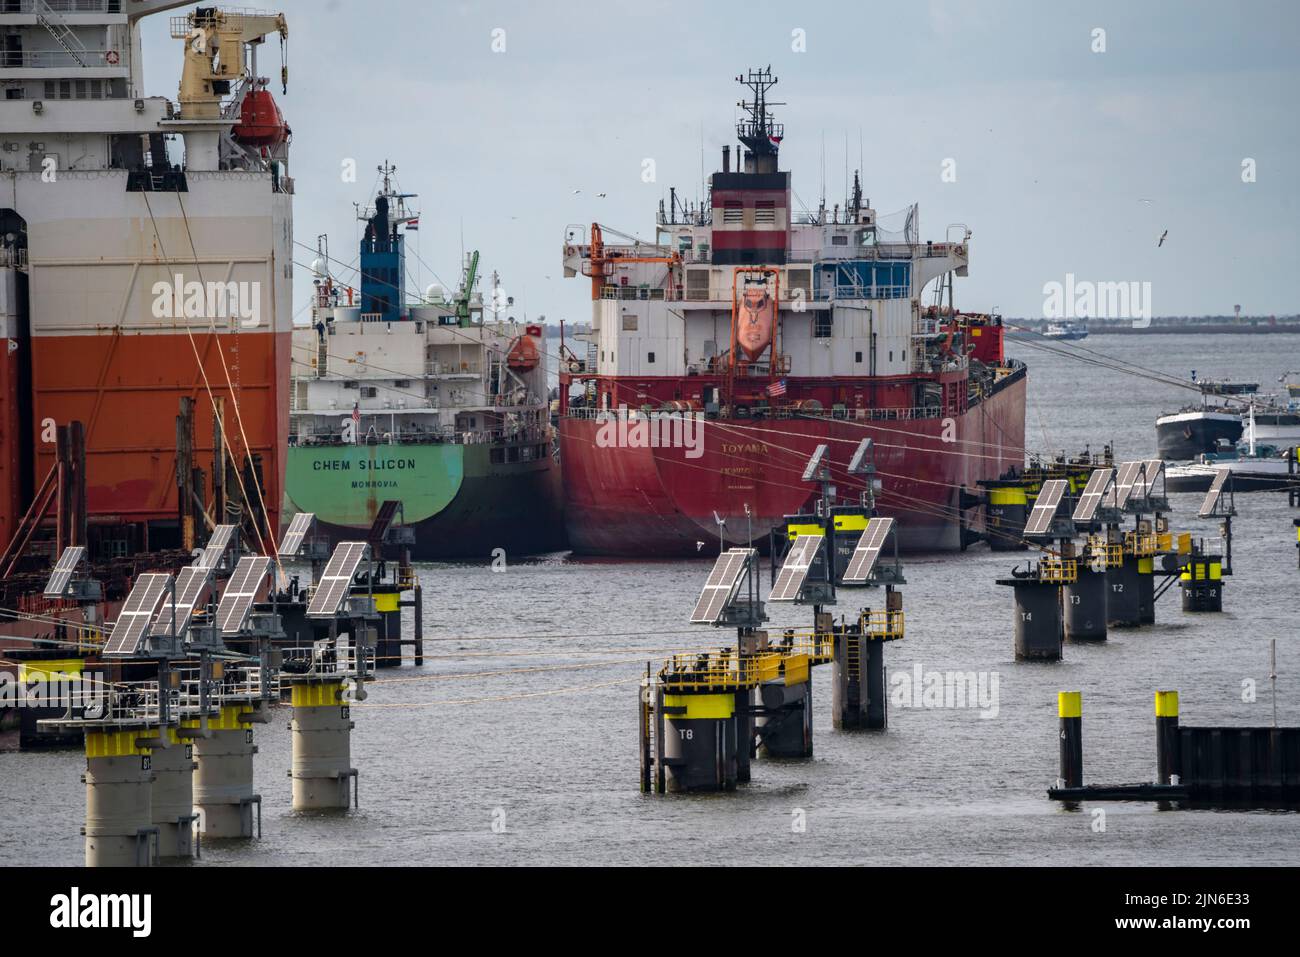 Petroleumhaven, los petroleros que esperan nueva carga en el puerto de Europoort, las líneas de amarre como los llamados delfines digitales, impulsados por la energía fotovoltaica, dan Foto de stock